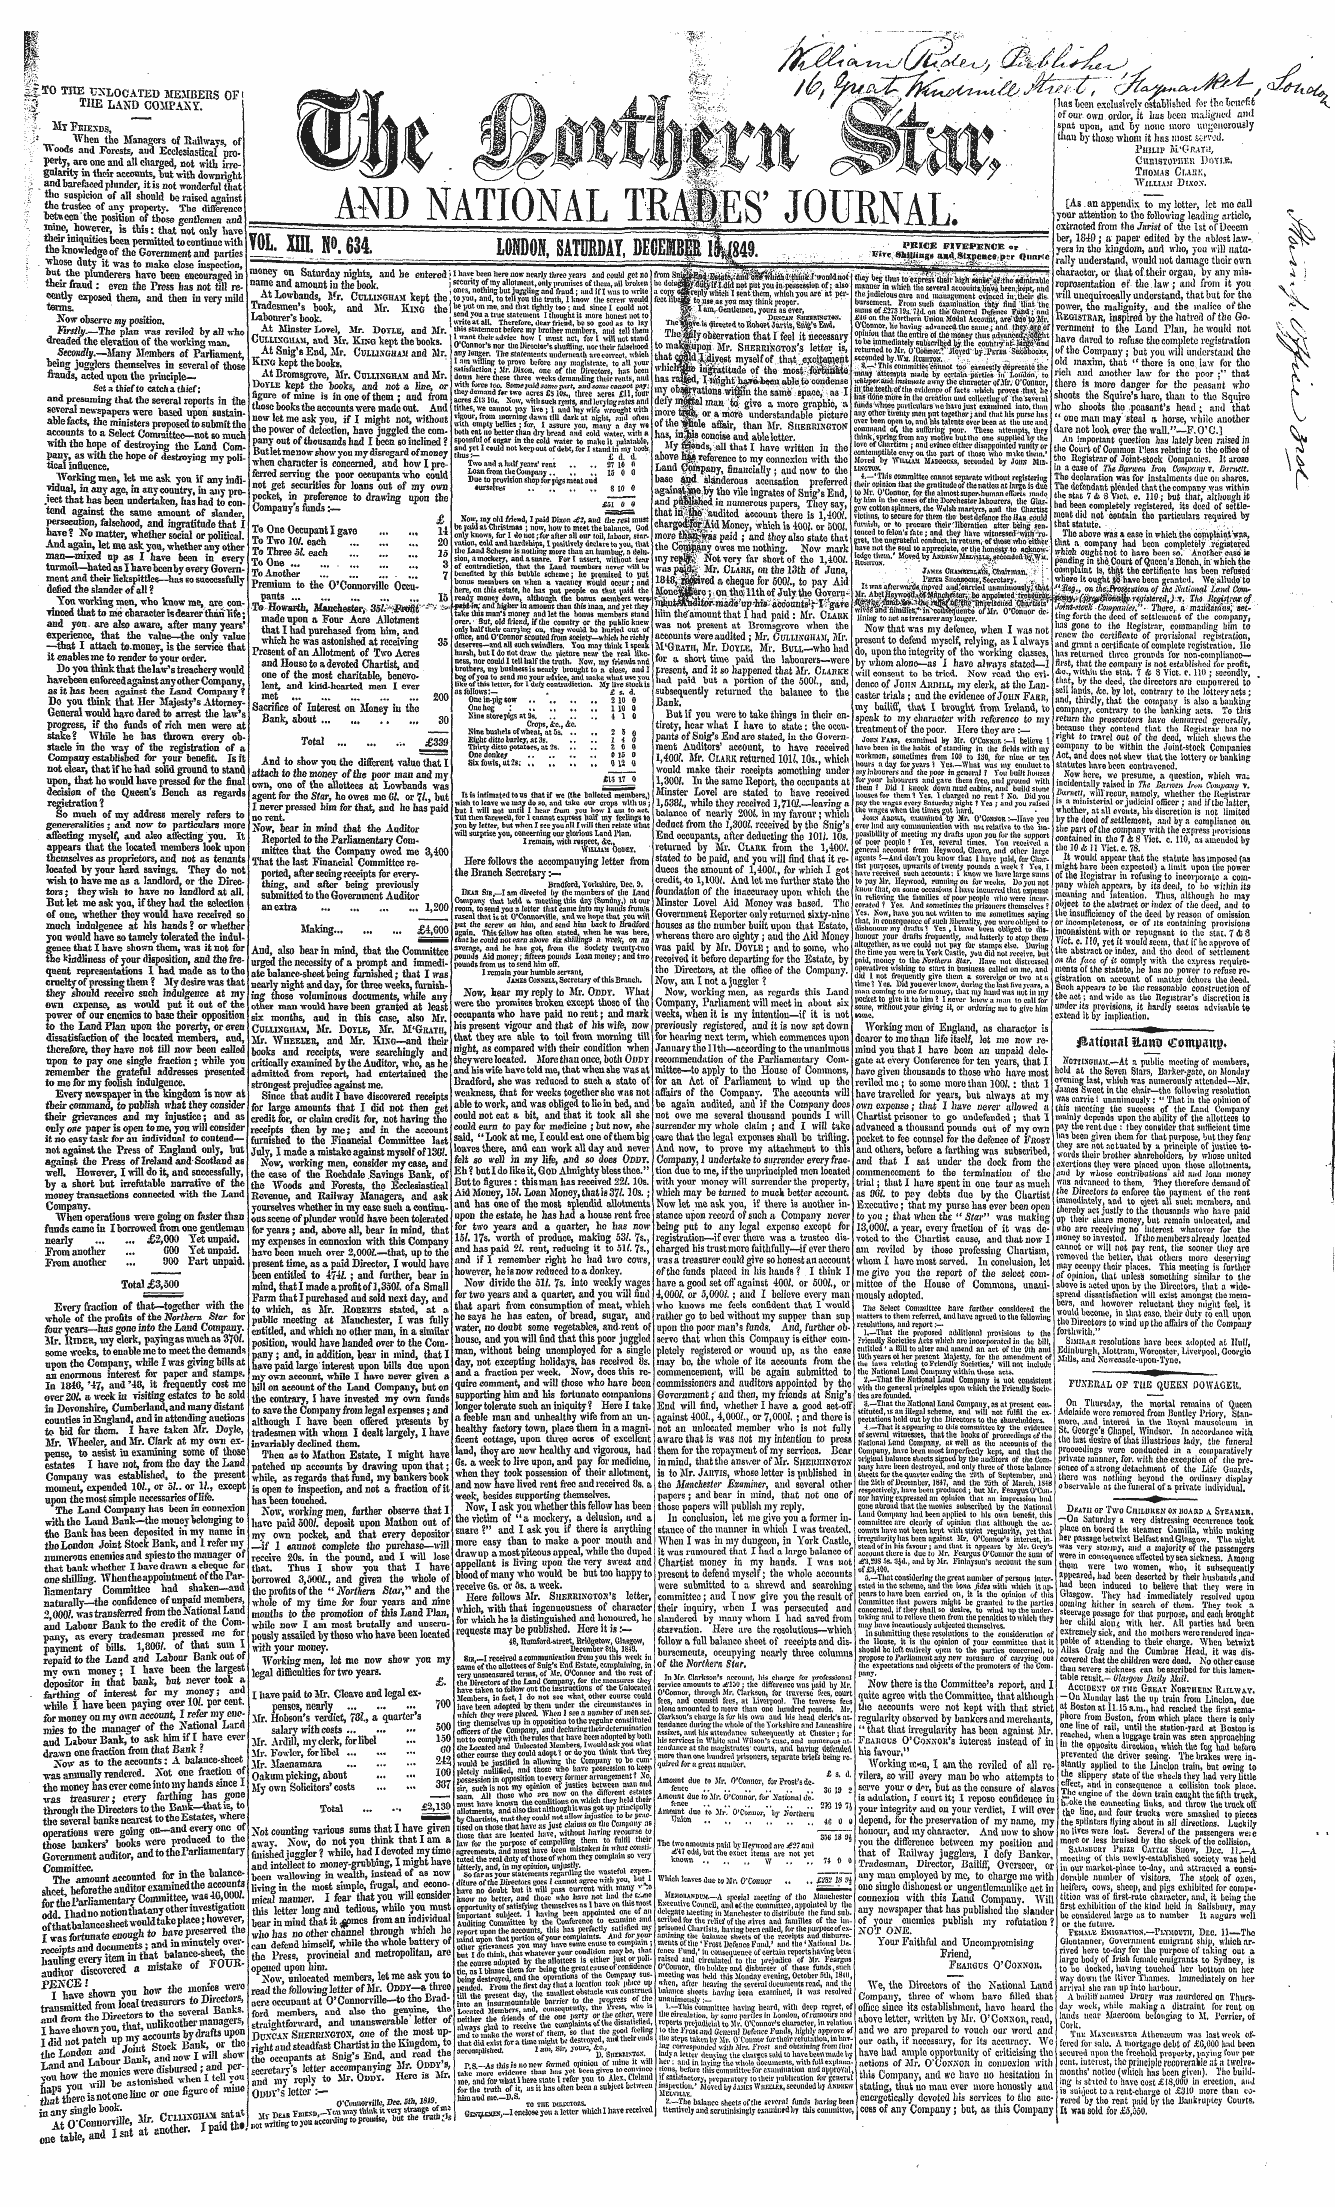 Northern Star (1837-1852): jS F Y, 3rd edition - W <¦ - •«-• \S F \ ^ R Pr- / Has Been Ex...